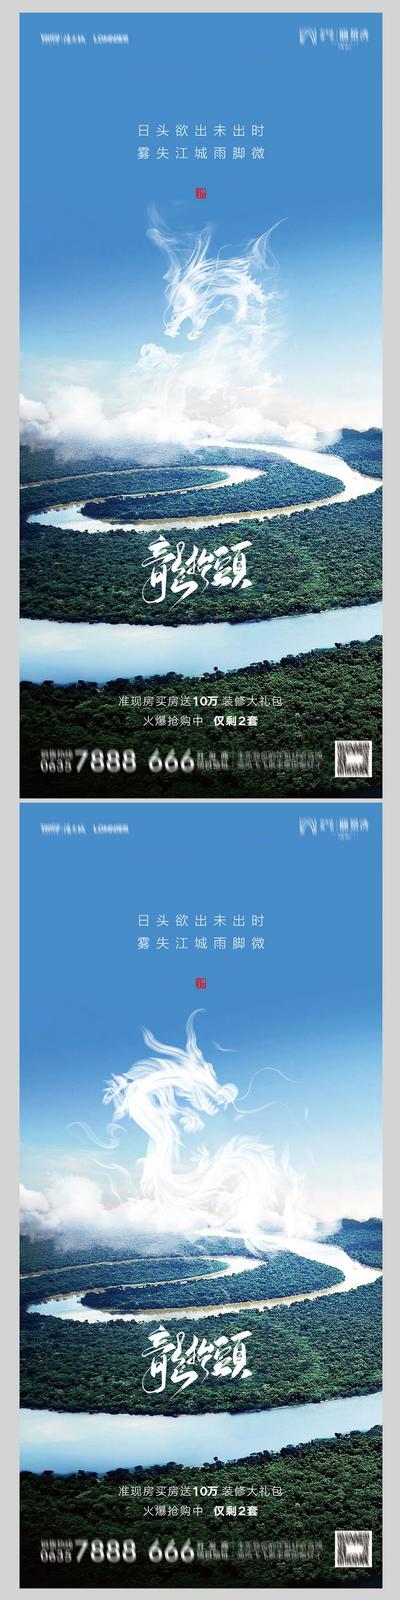 南门网 海报 地产 中国传统节日 二月二 龙抬头 大气